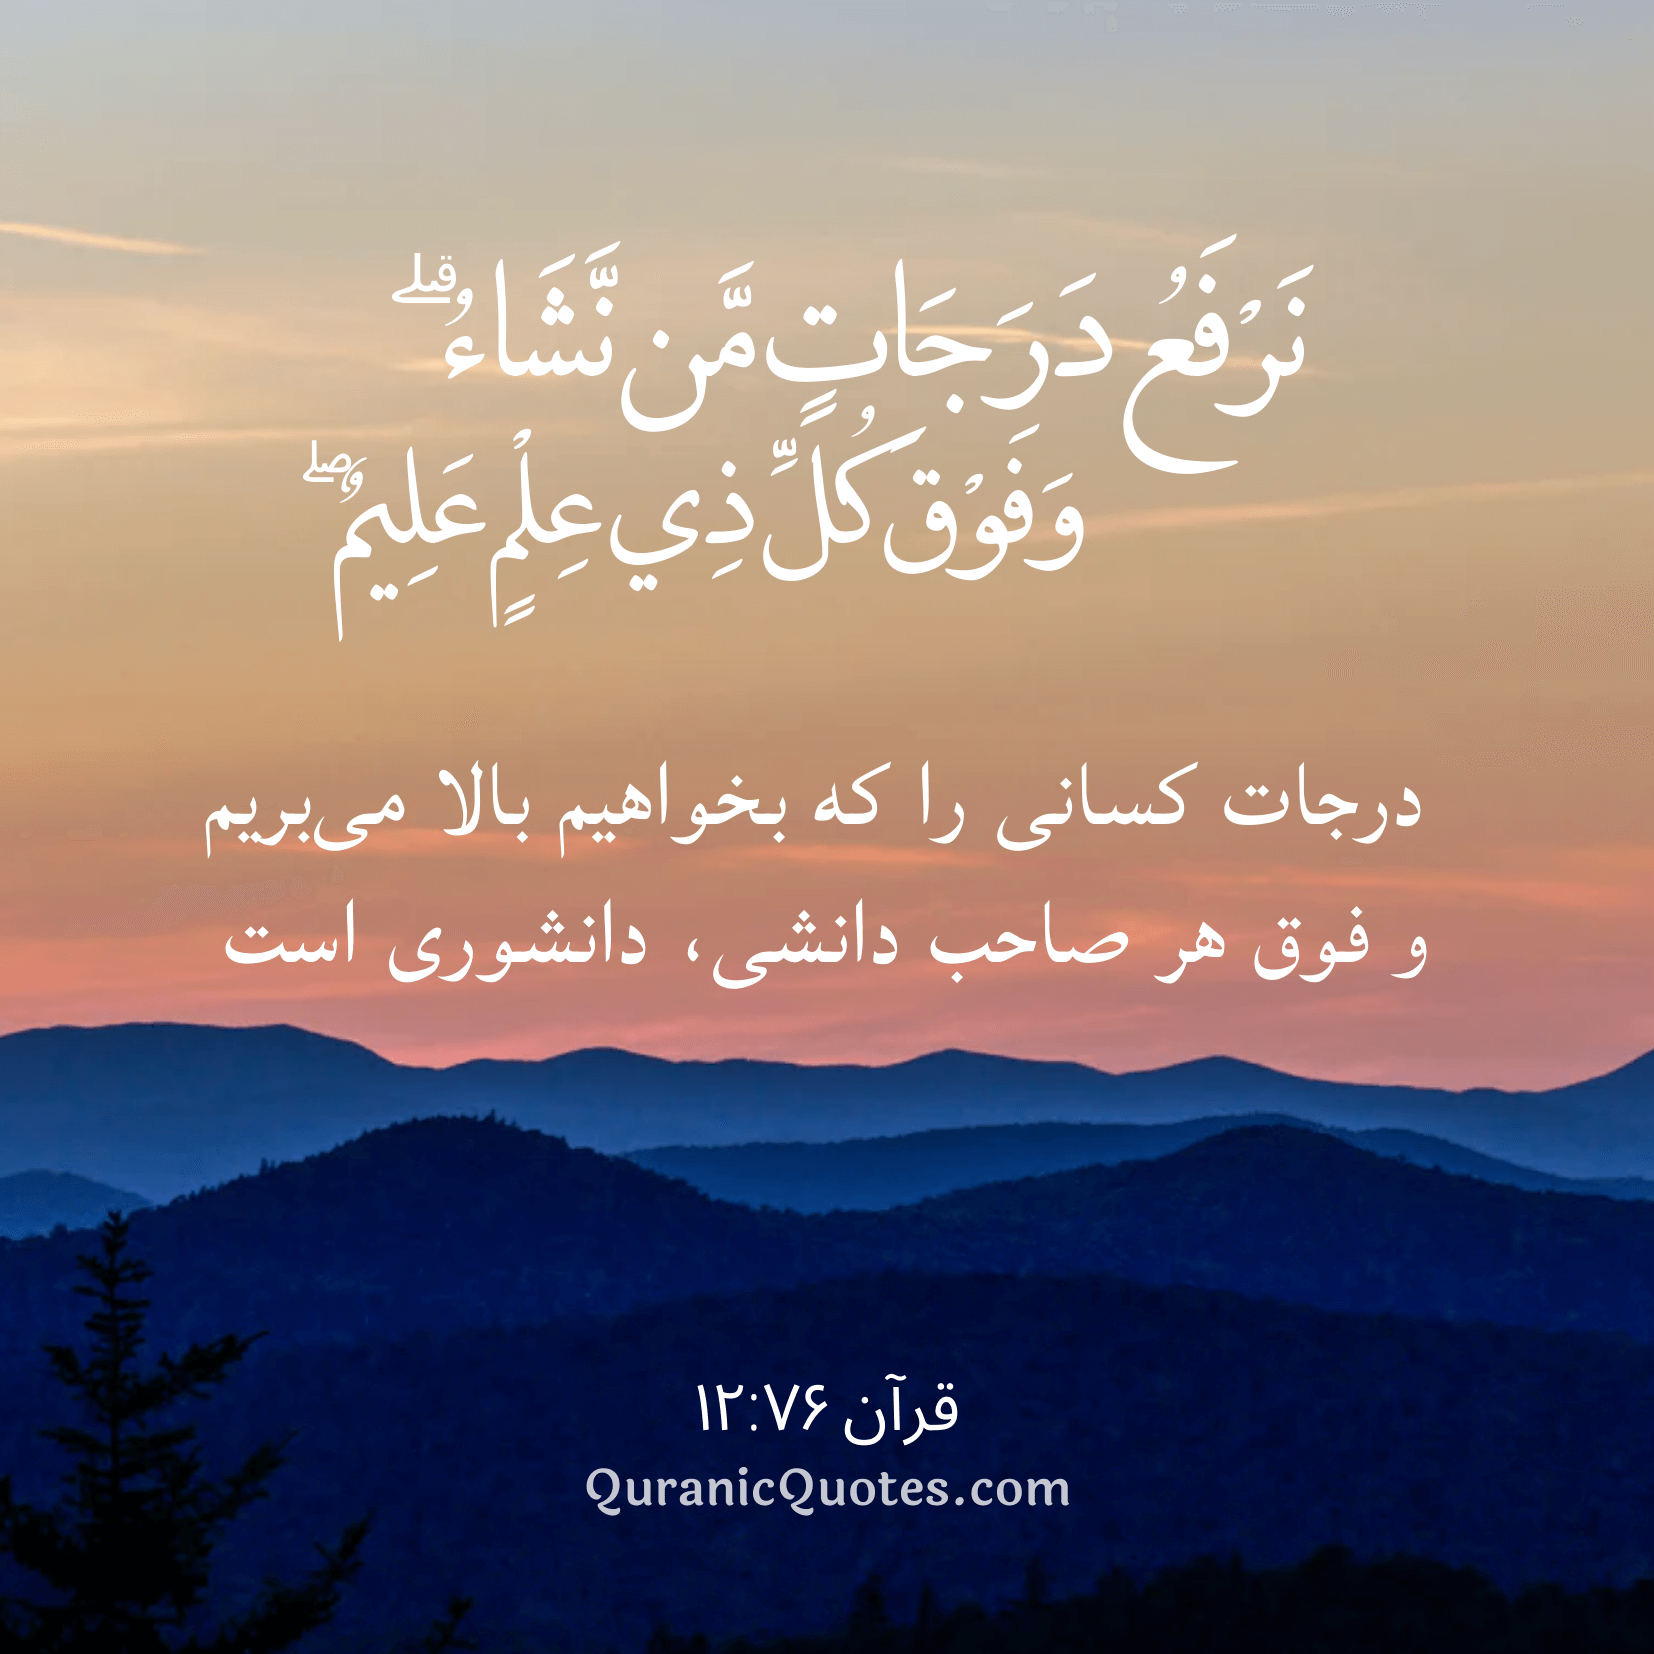 Quranic Quotes in Farsi 12:76